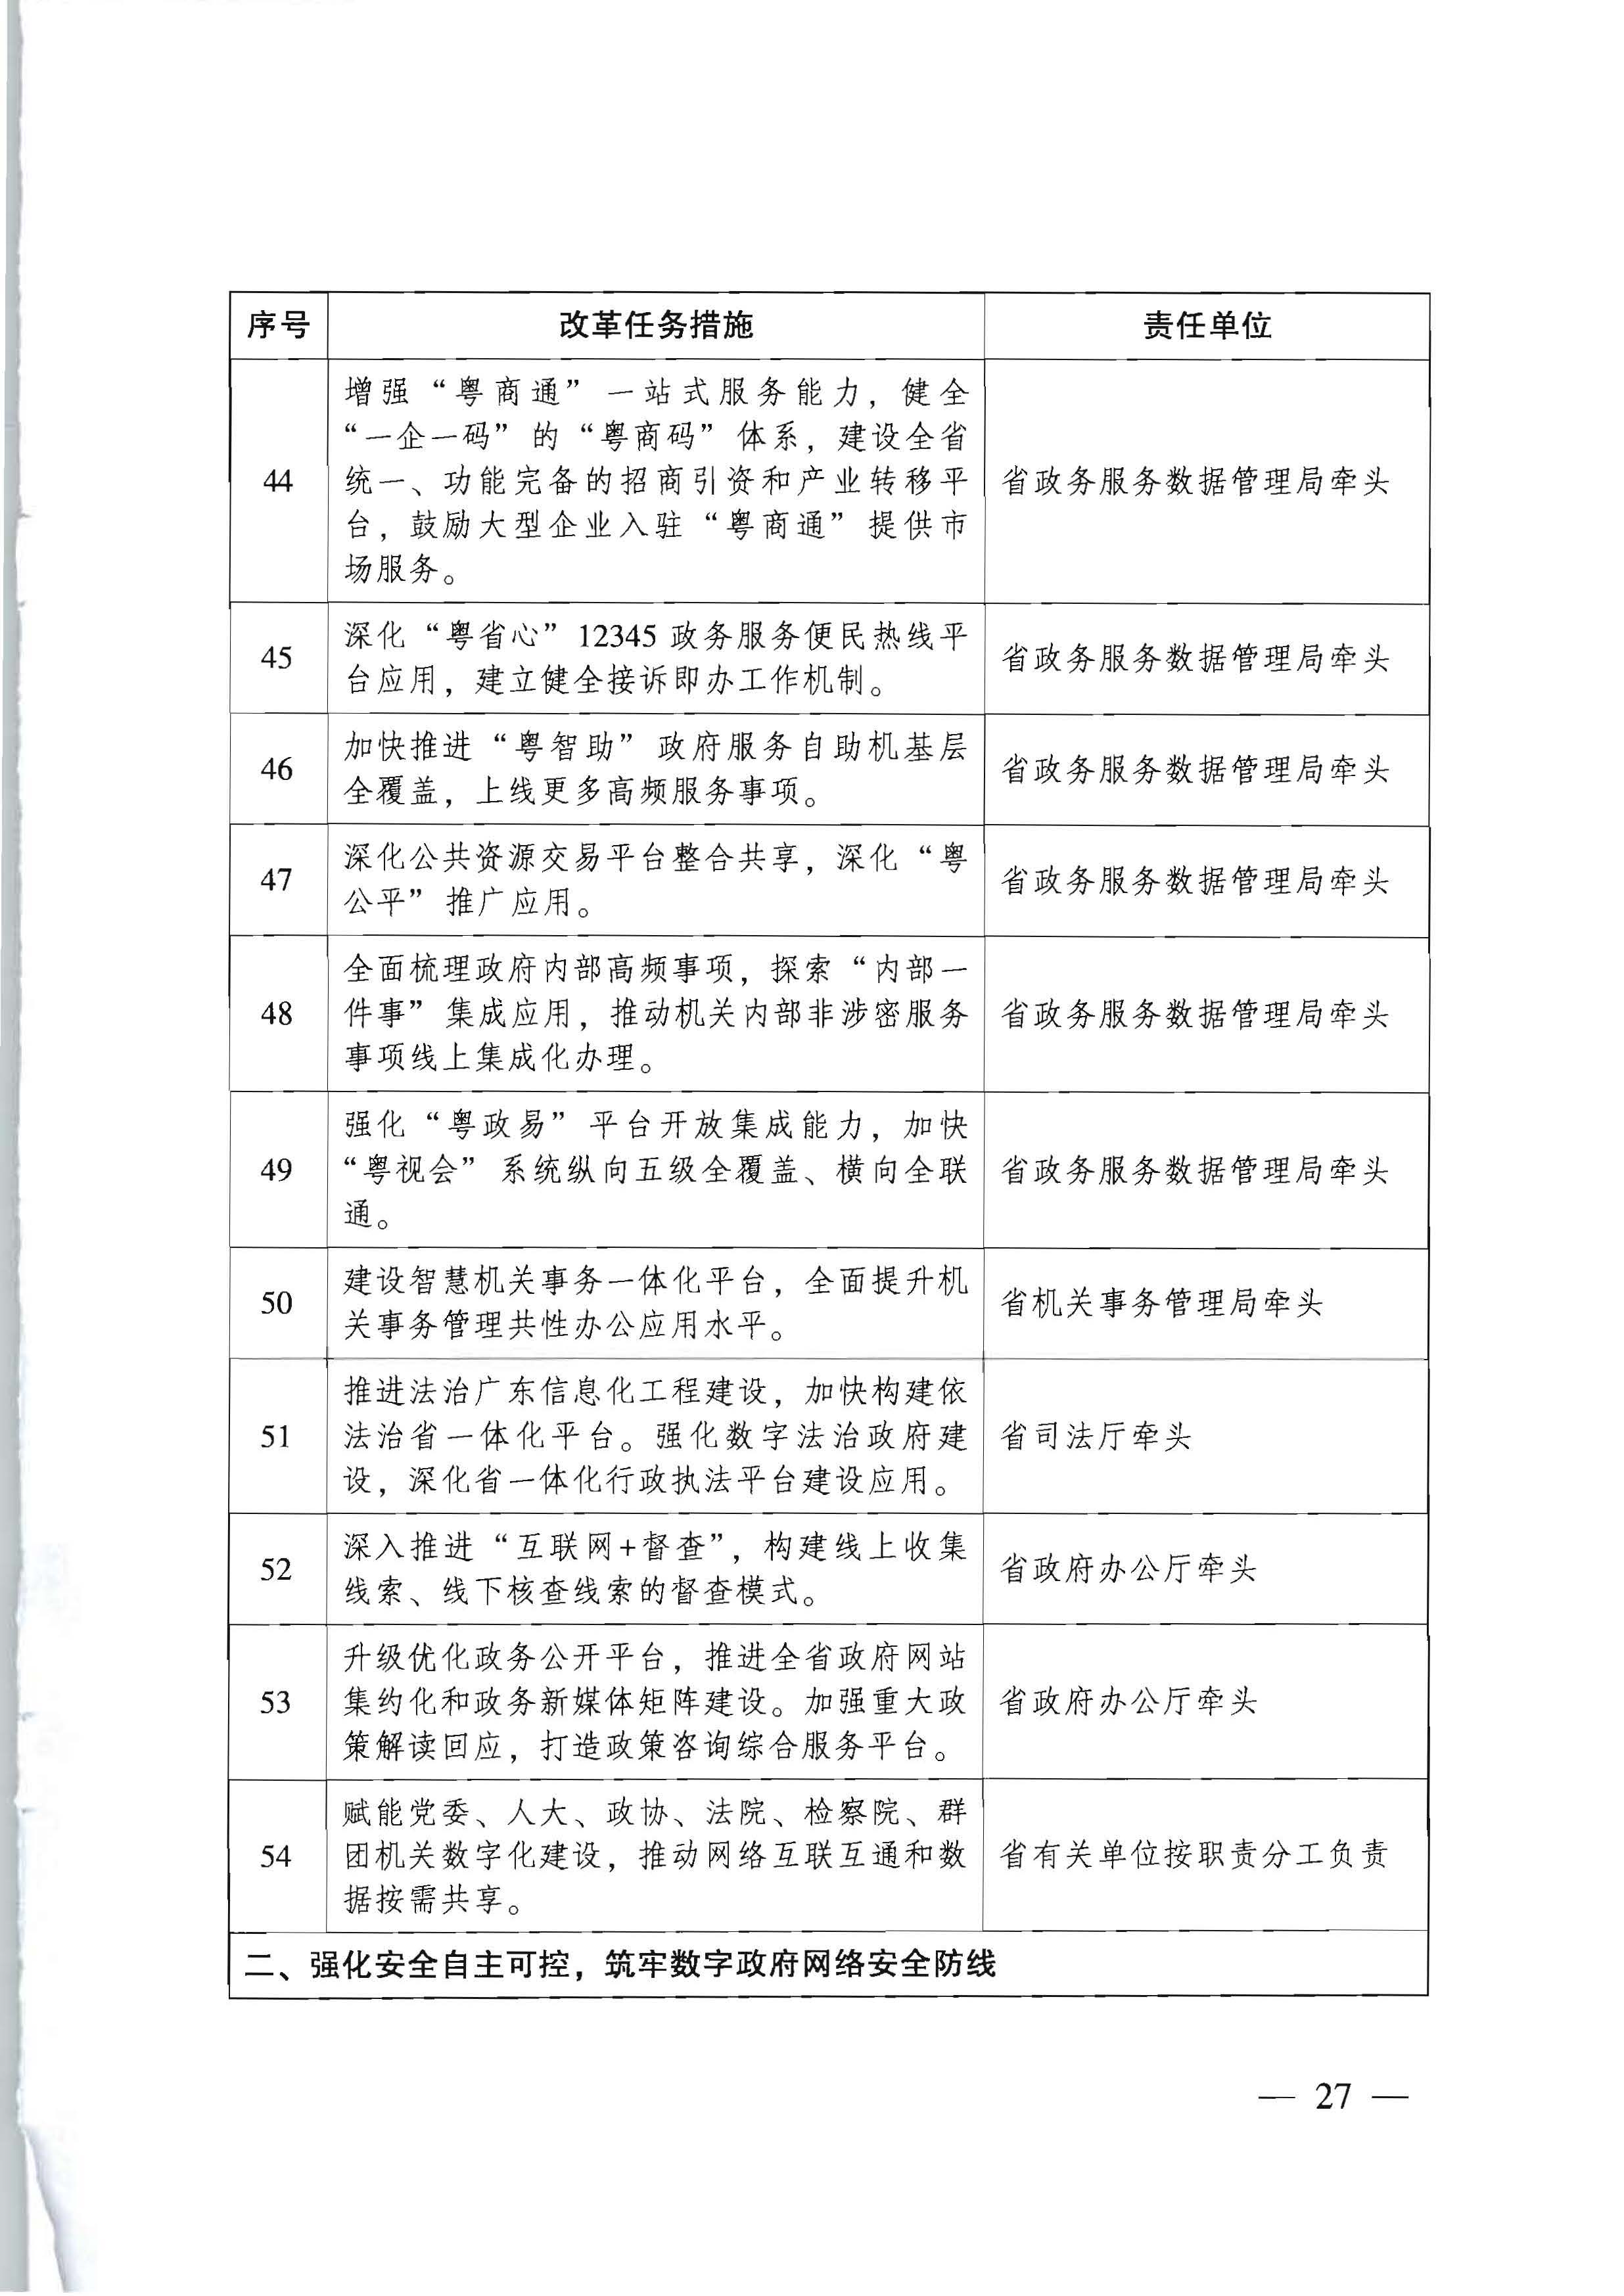 广东省人民政府关于进一步深化数字政府改革建设的实施意见_页面_27.jpg